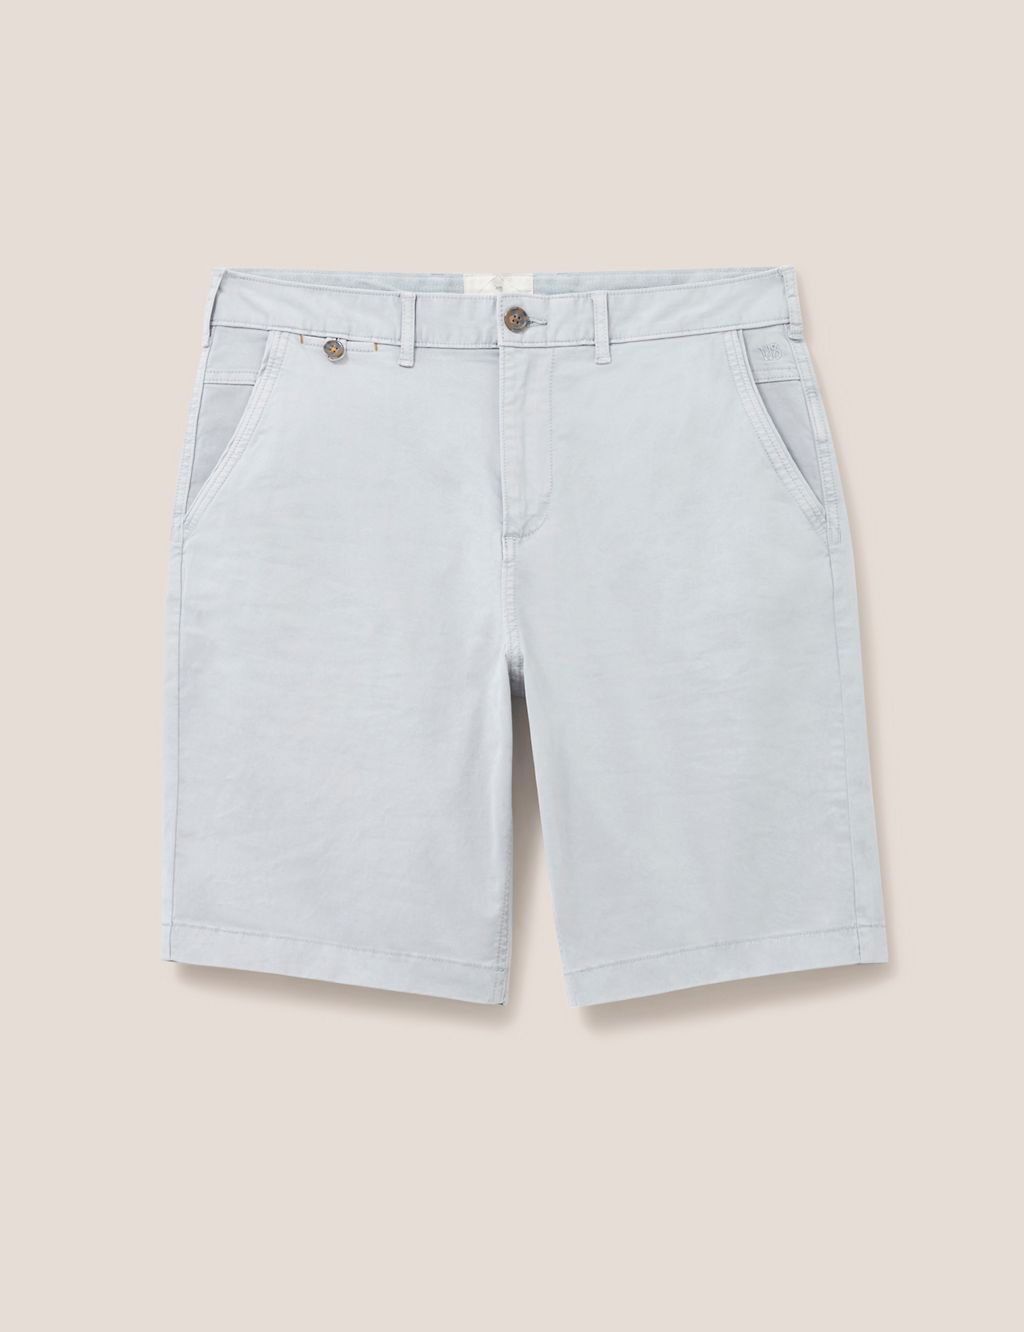 5 Pocket Chino Shorts 1 of 5